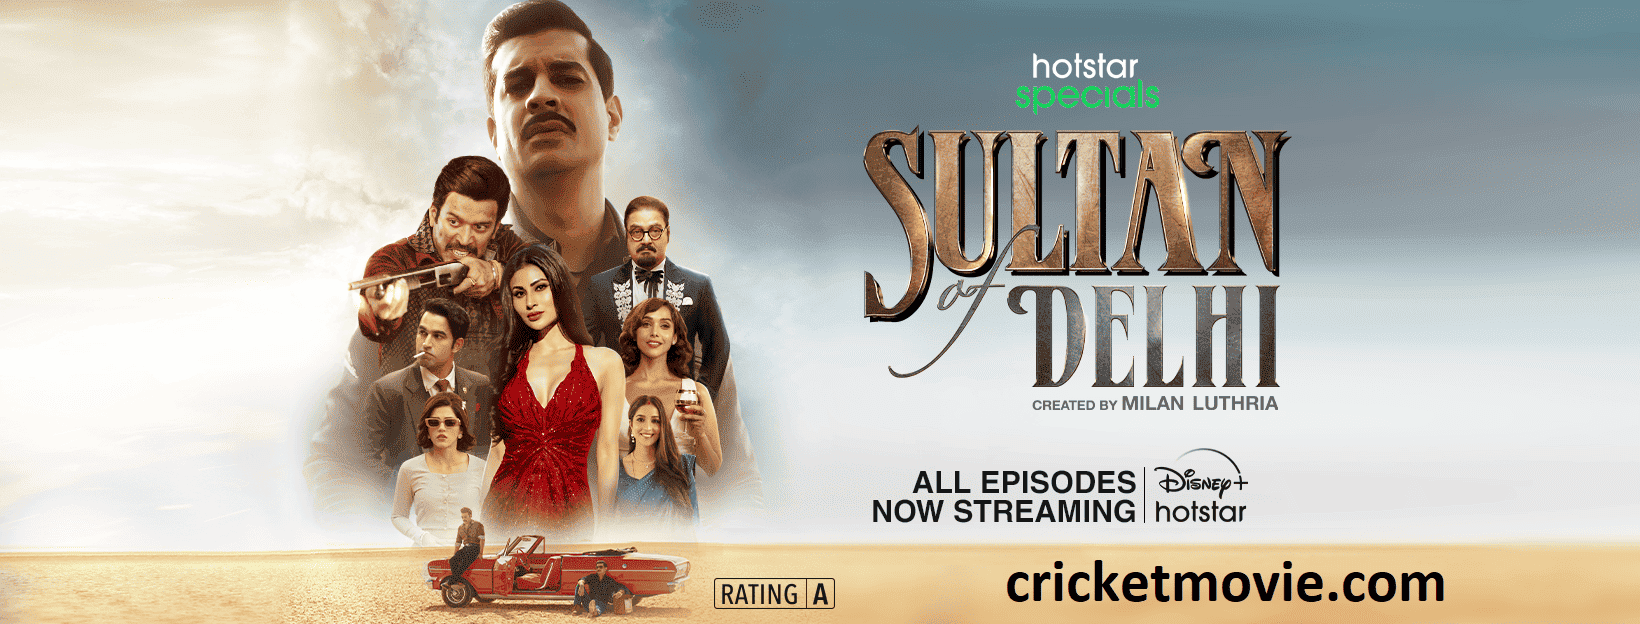 Sultan Of Delhi Review-cricketmovie.com